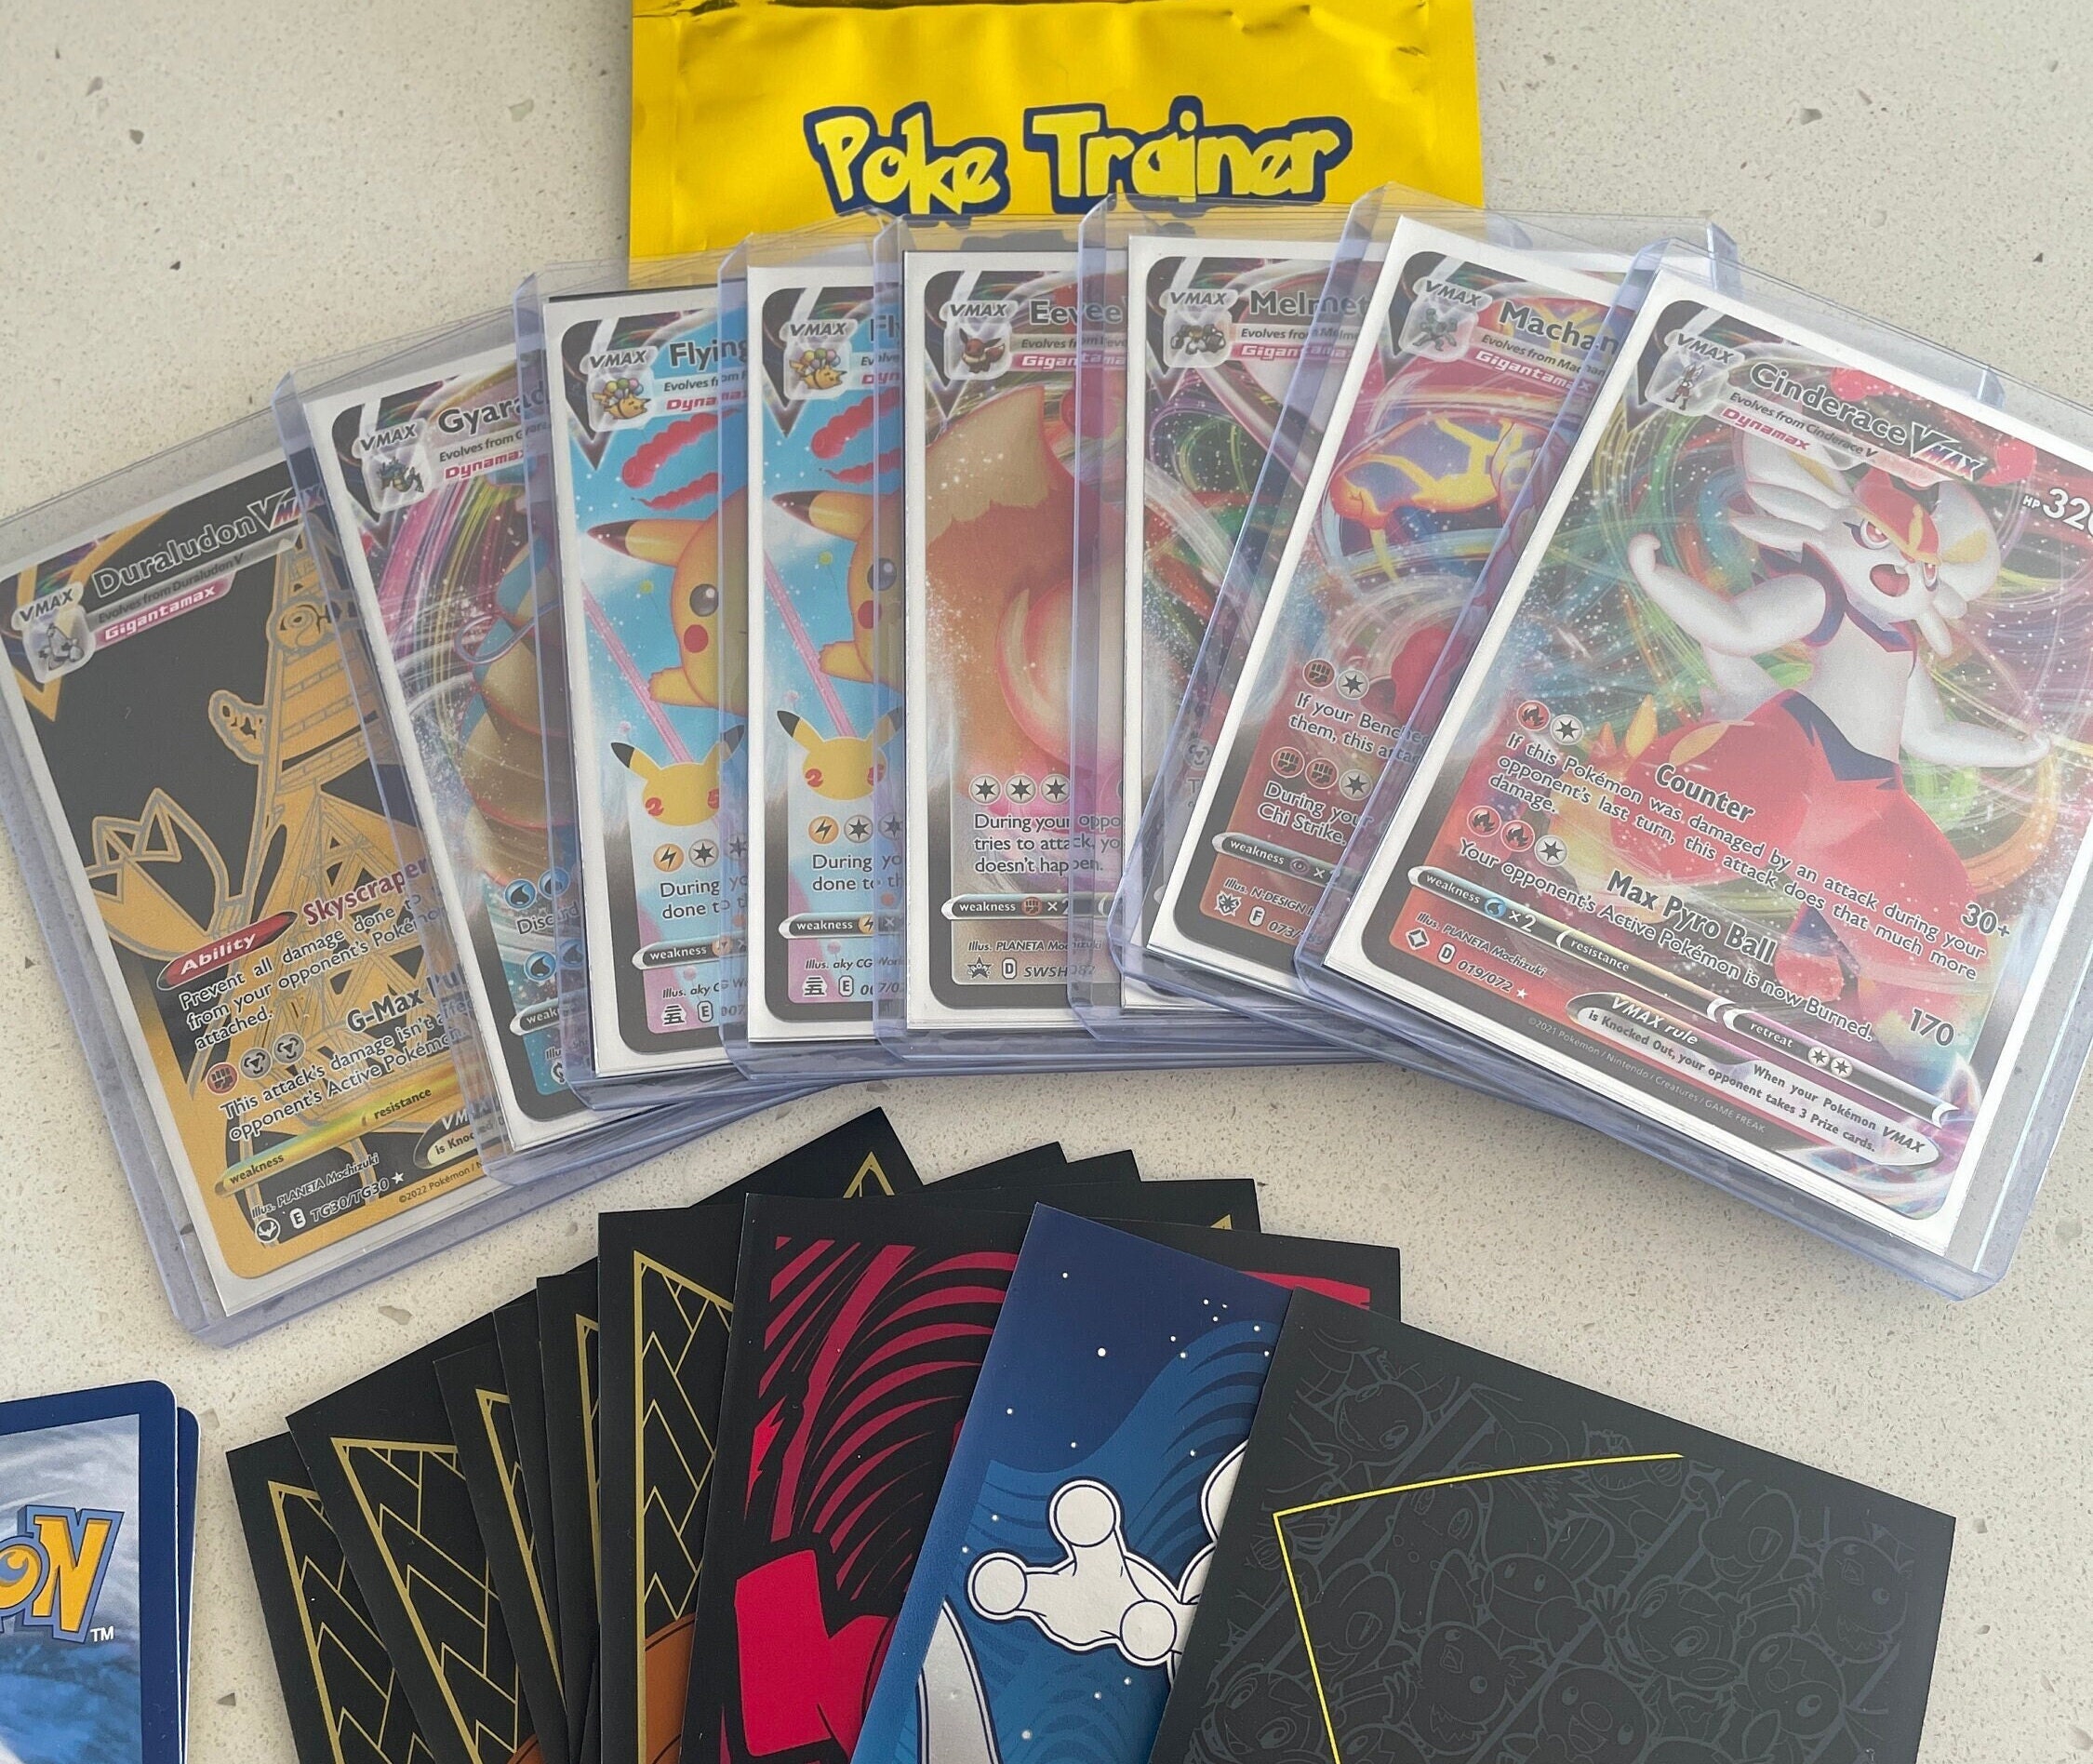 Pokemon Cartes pokemon dorées collection VMAX 55 avec Album rares 3D 432  Cartes à prix pas cher